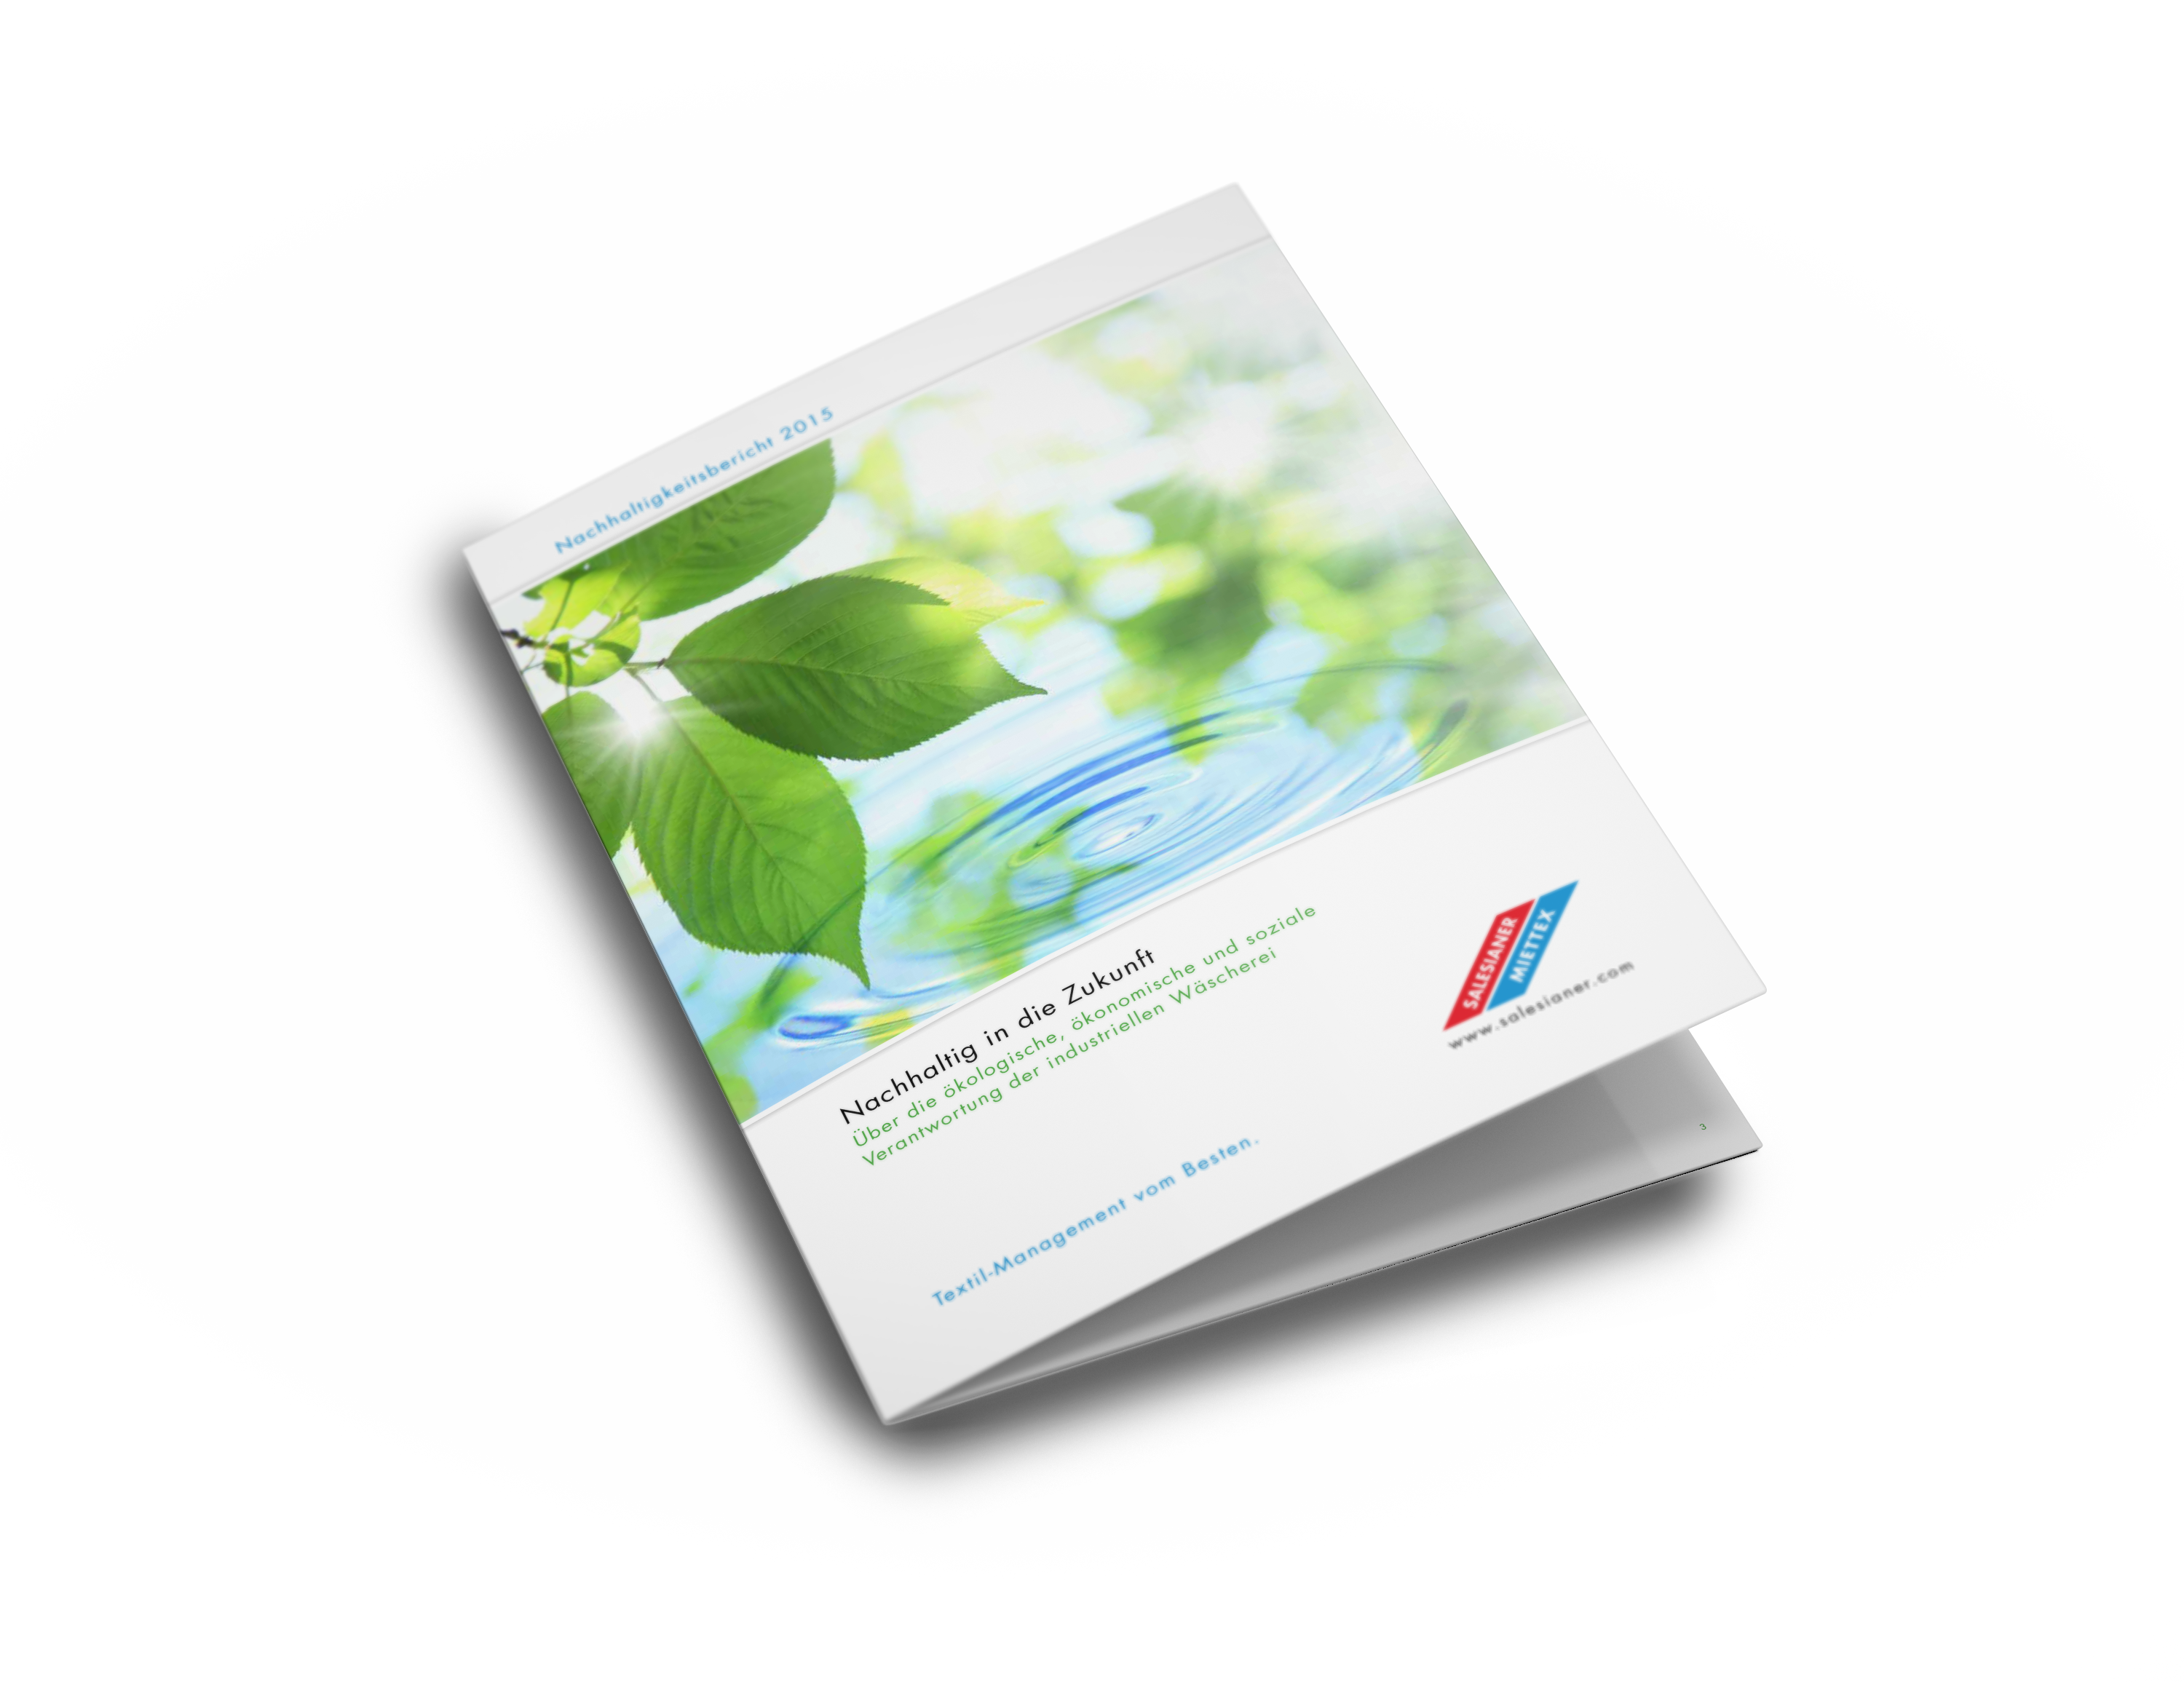 SALESIANER Nachhaltigkeitsbericht 2013–2015, auf Deutsch, dokumentiert die umweltfreundlichen Maßnahmen und Fortschritte des Unternehmens in den Jahren 2013 bis 2015